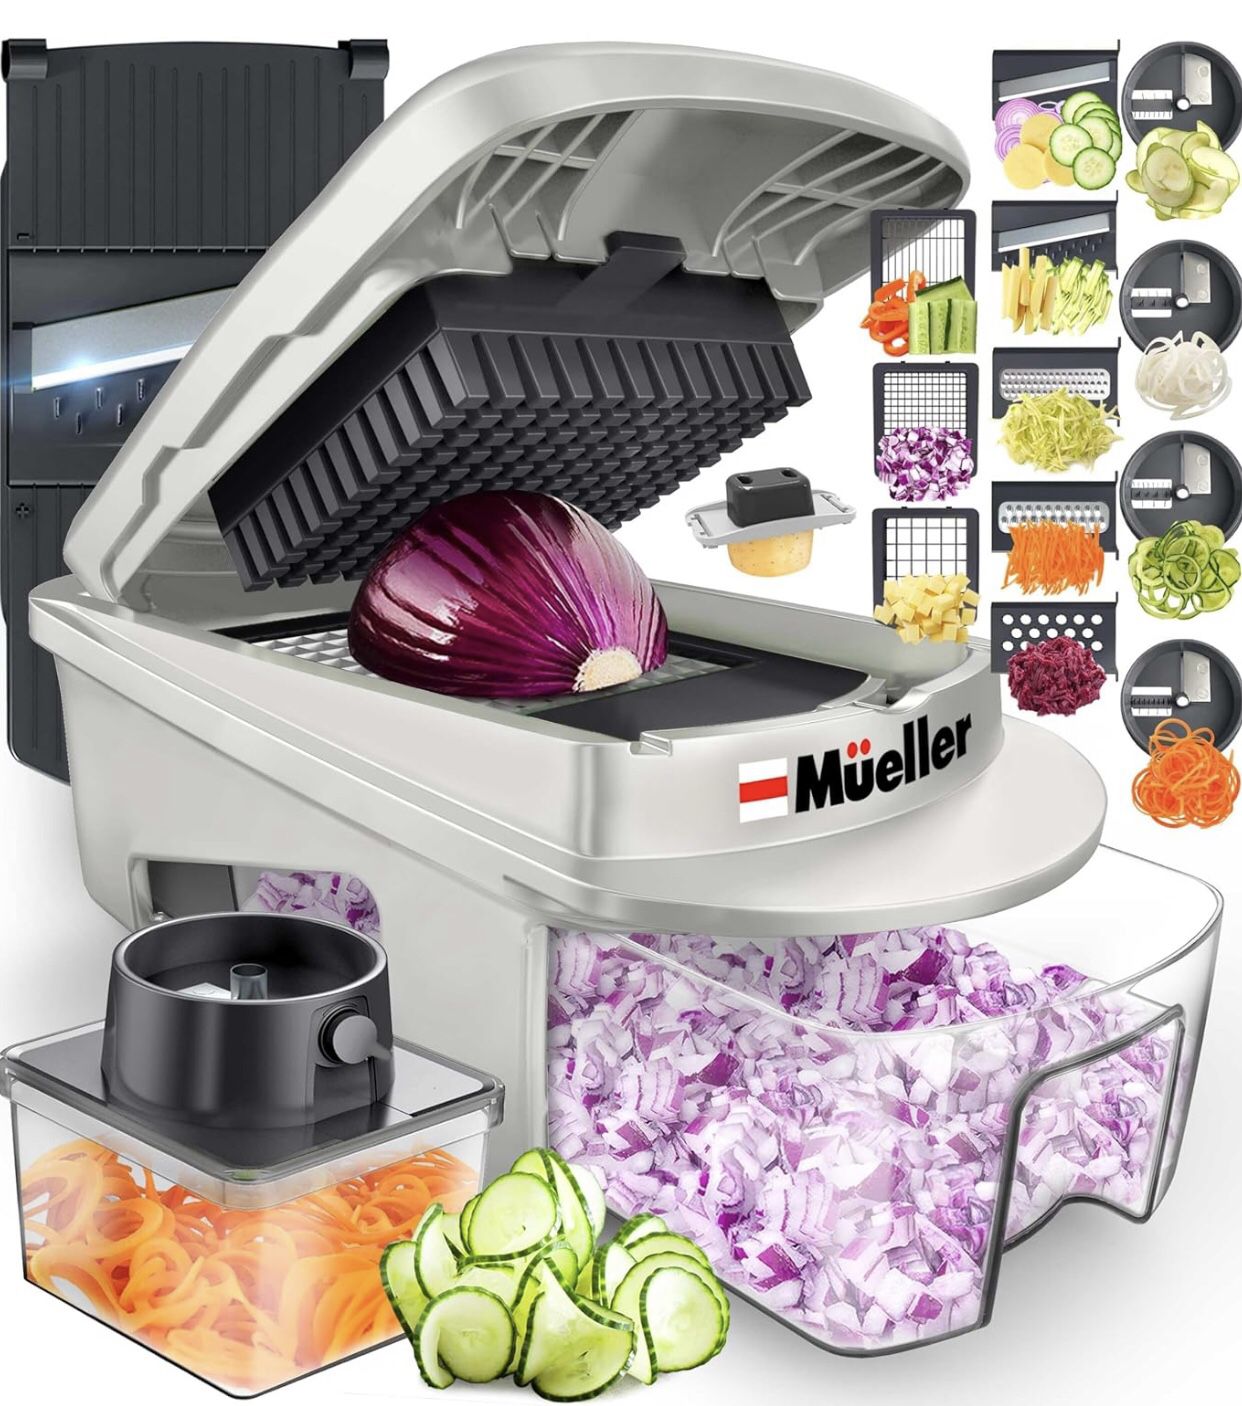 Mueller Pro-Series All-in-One, 12 Blade Mandoline Slicer for Kitchen, Food Chopper, Vegetable Slicer